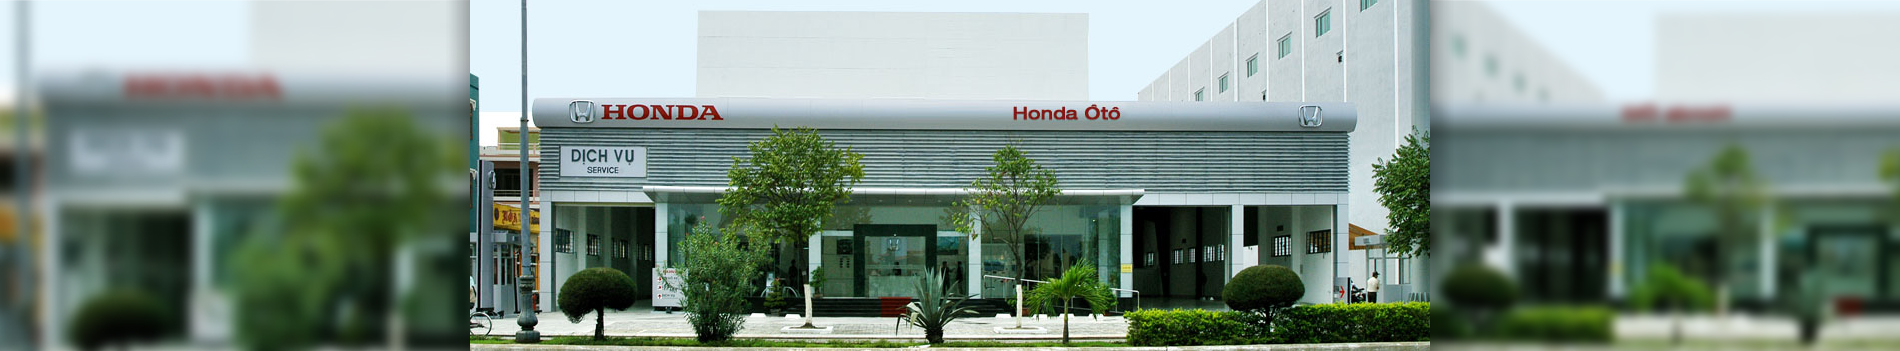 Giời thiệu về Honda Ôtô Cộng Hòa